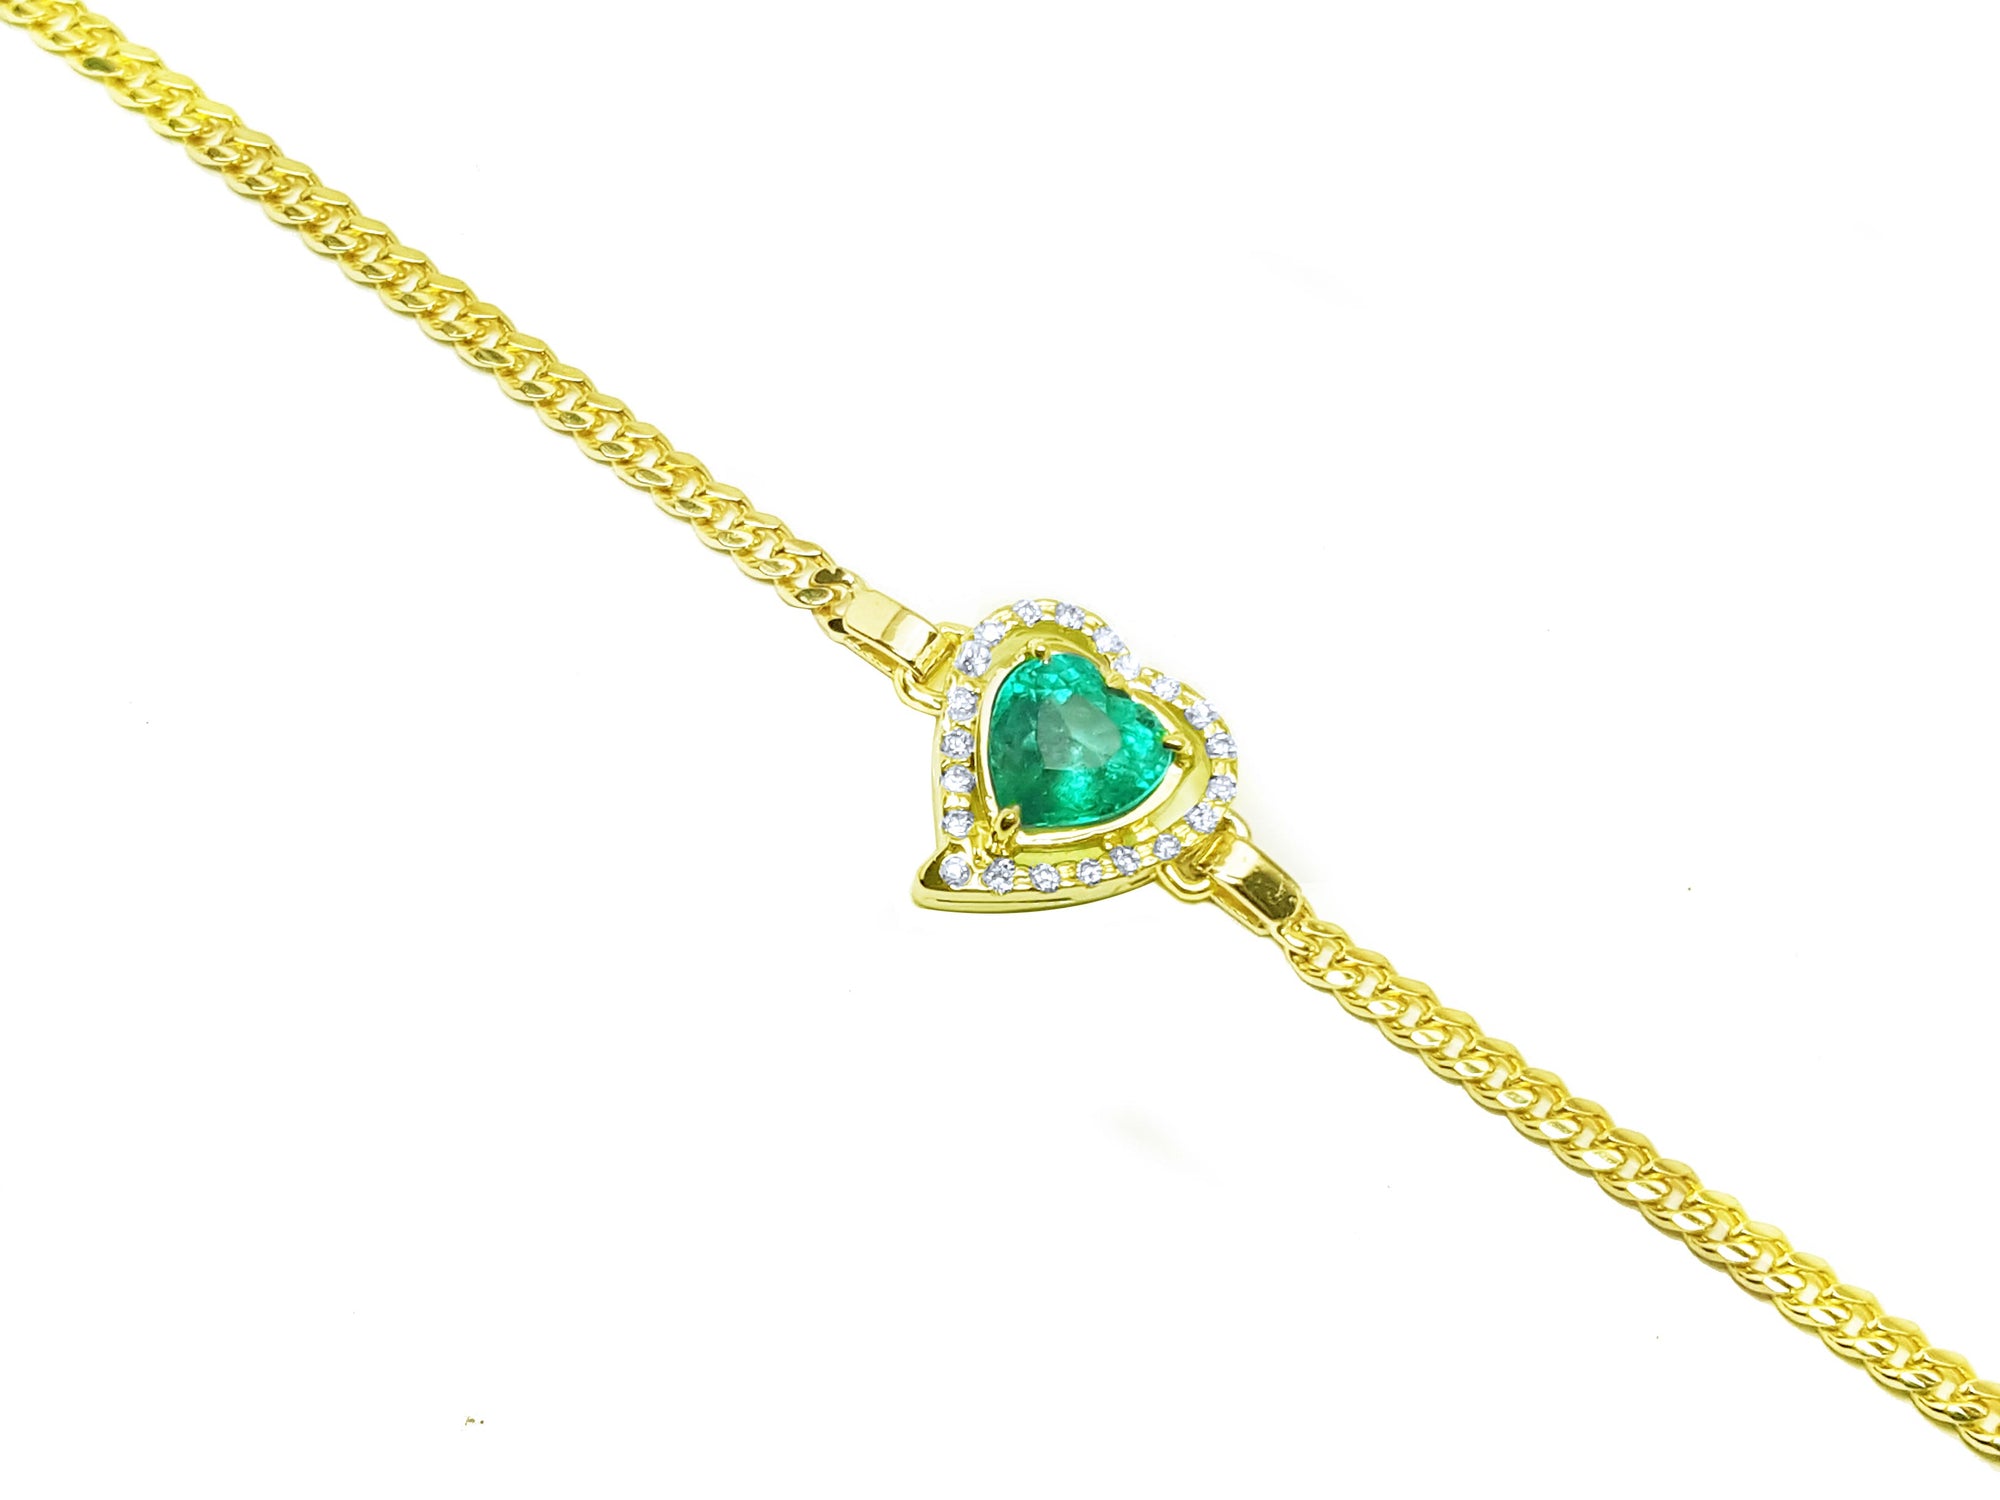 Heart emerald jewelry bracelet